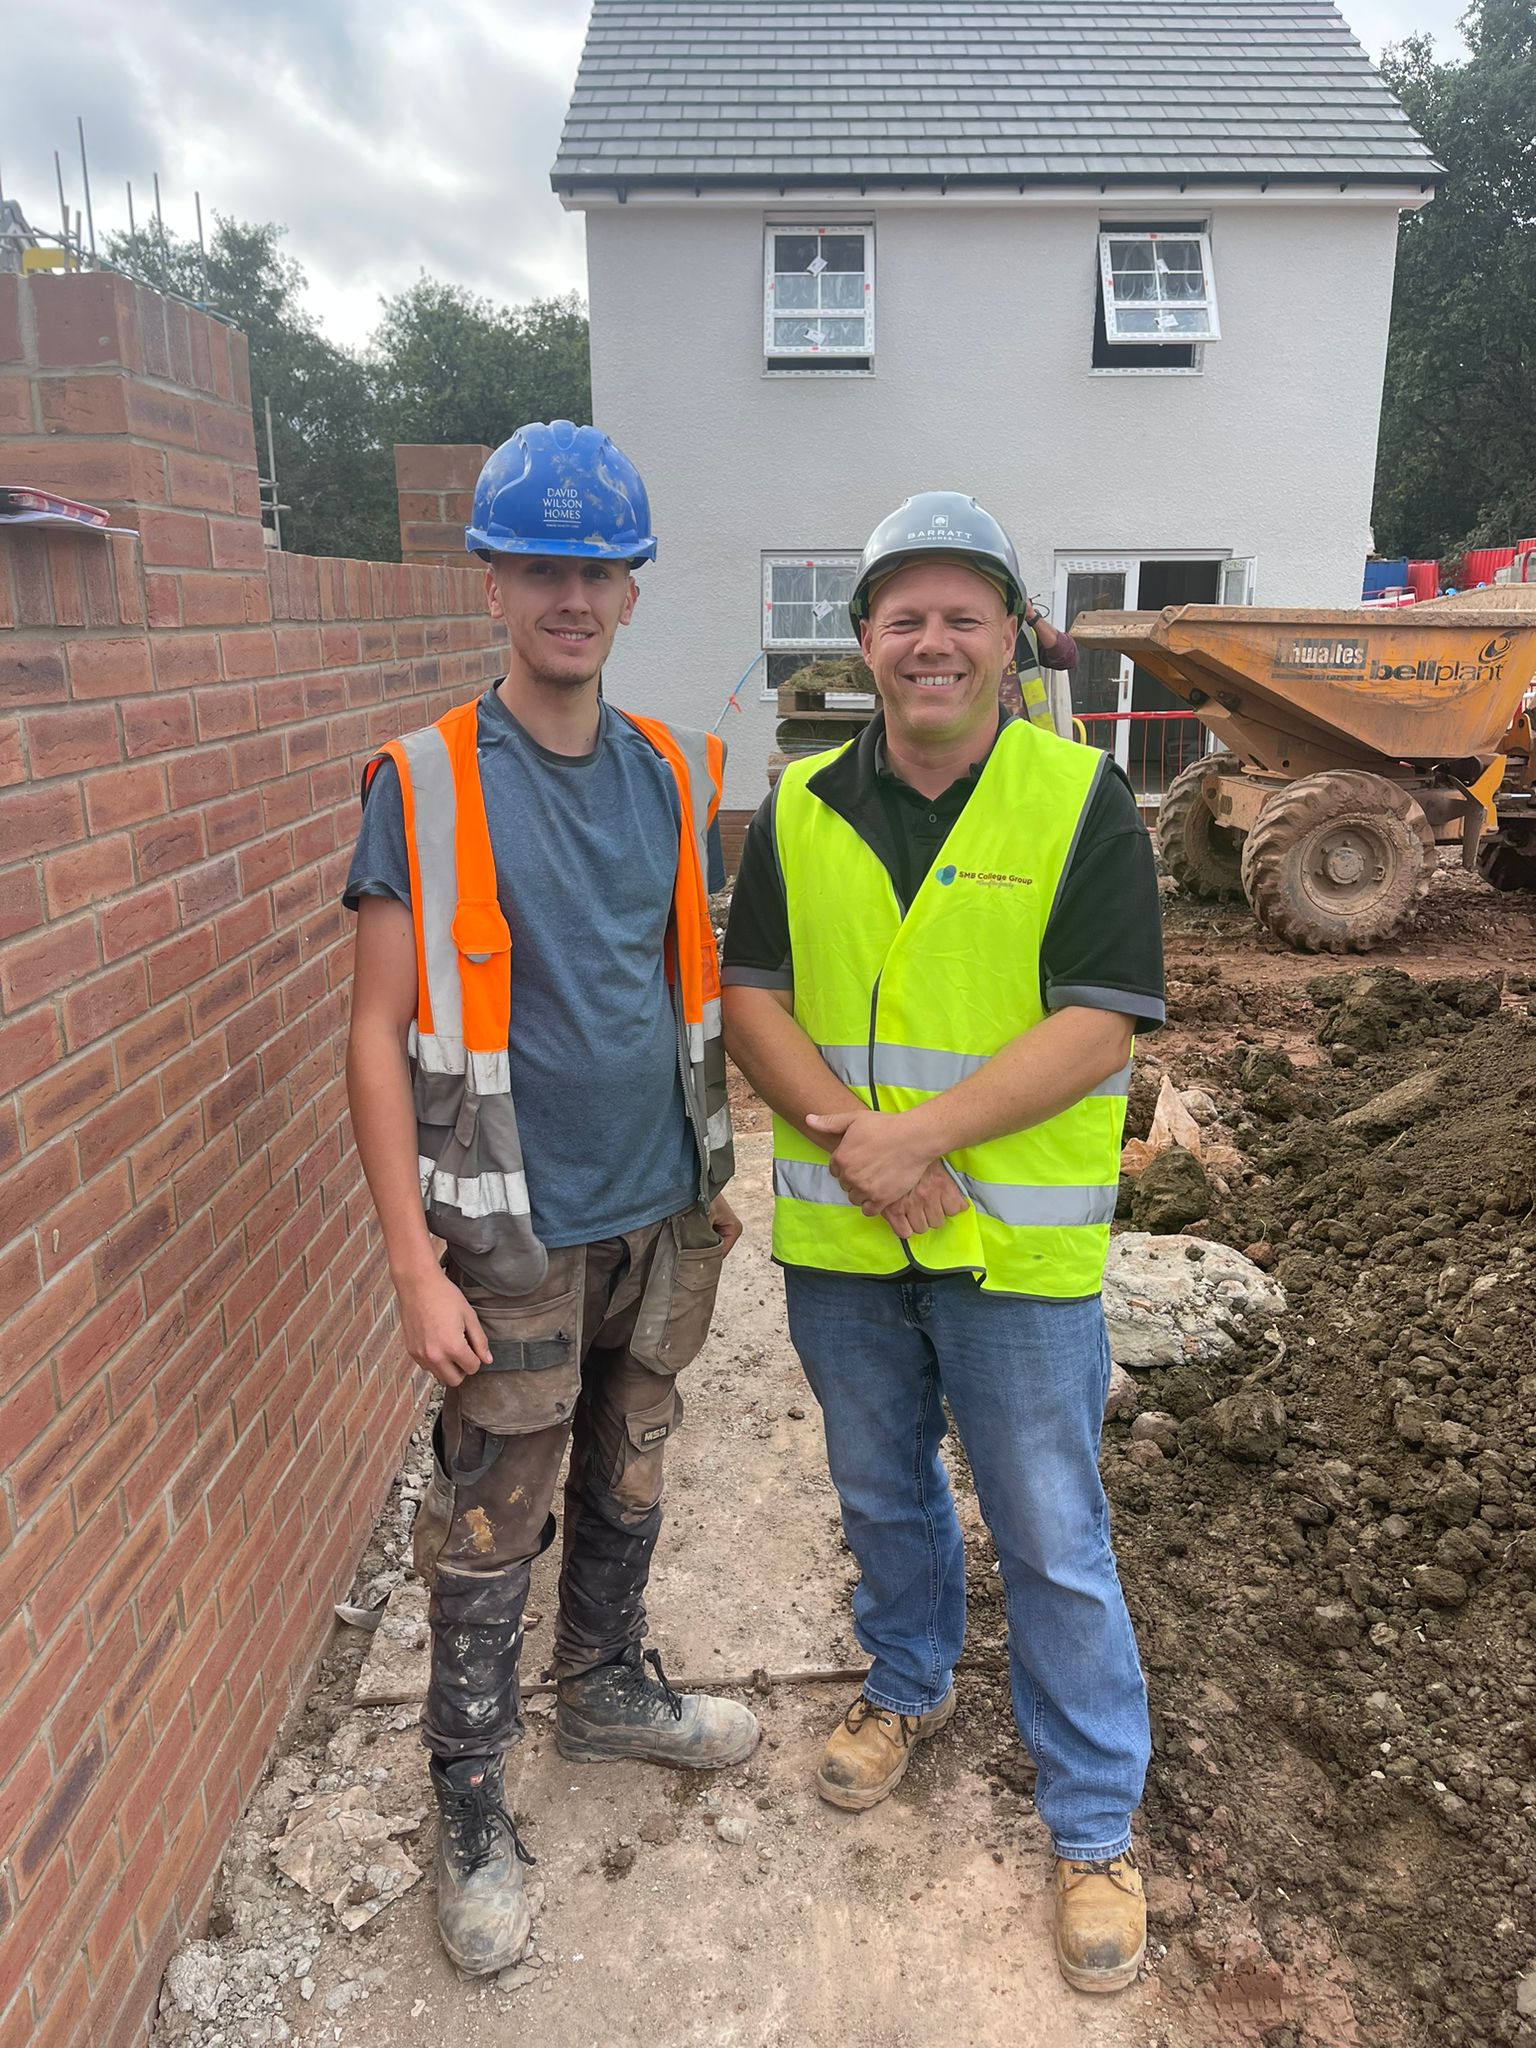 2 men construction picture.